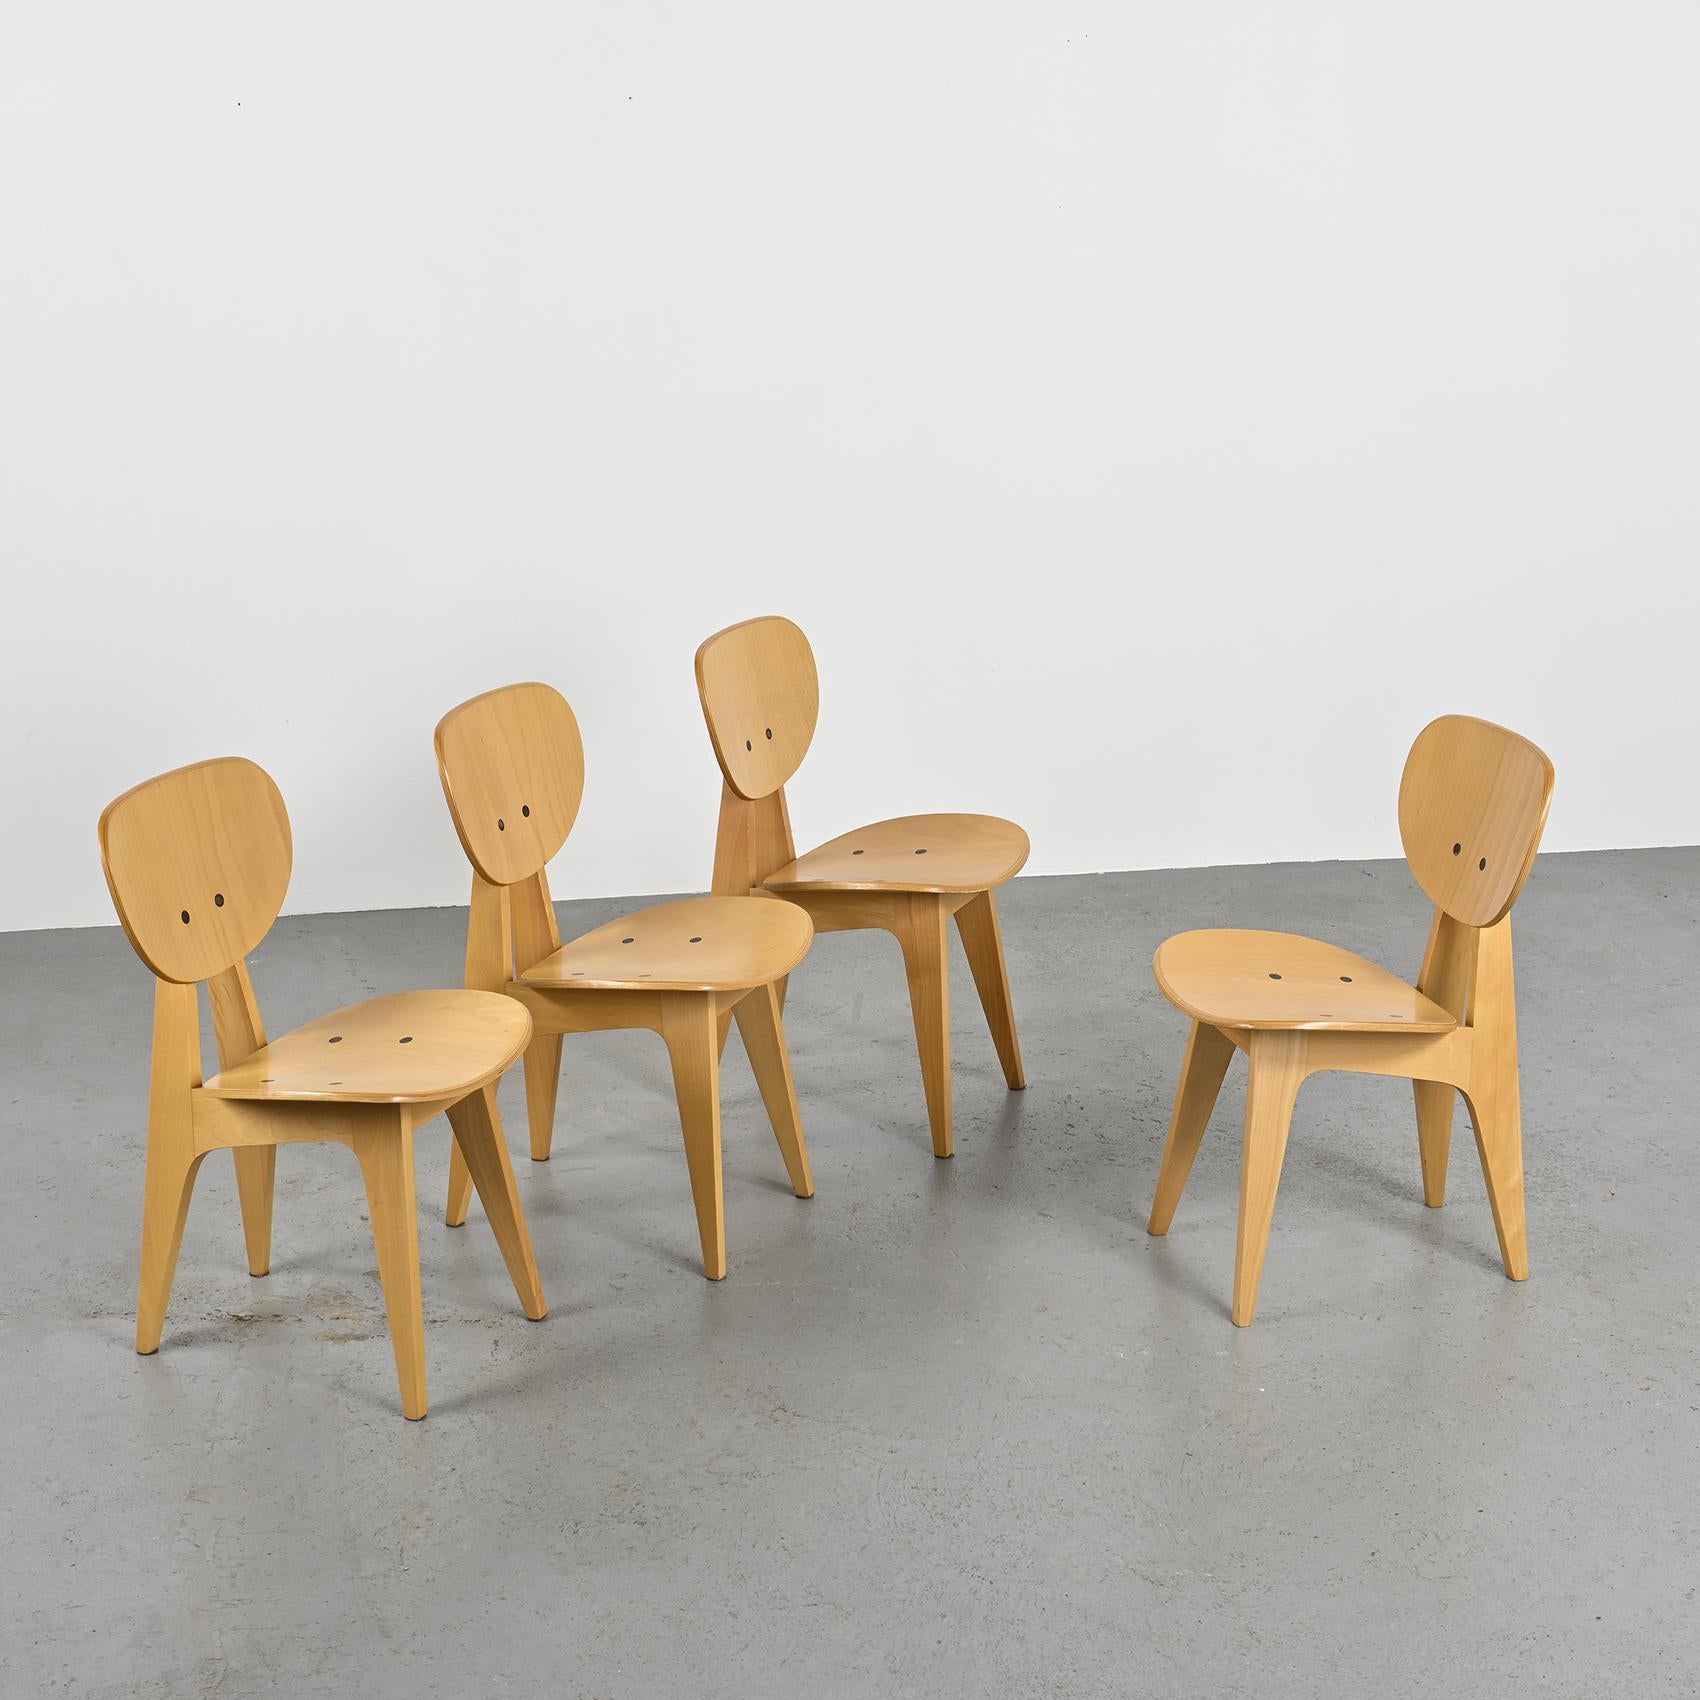 Ensemble de quatre chaises, modèle 3221, imaginé dans les années 1950 par le designer et architecte japonais Junzo Sakakura, connu pour sa Collaboration avec Le Corbusier. Ces chaises exhalent la sophistication et l'ingéniosité fonctionnelle